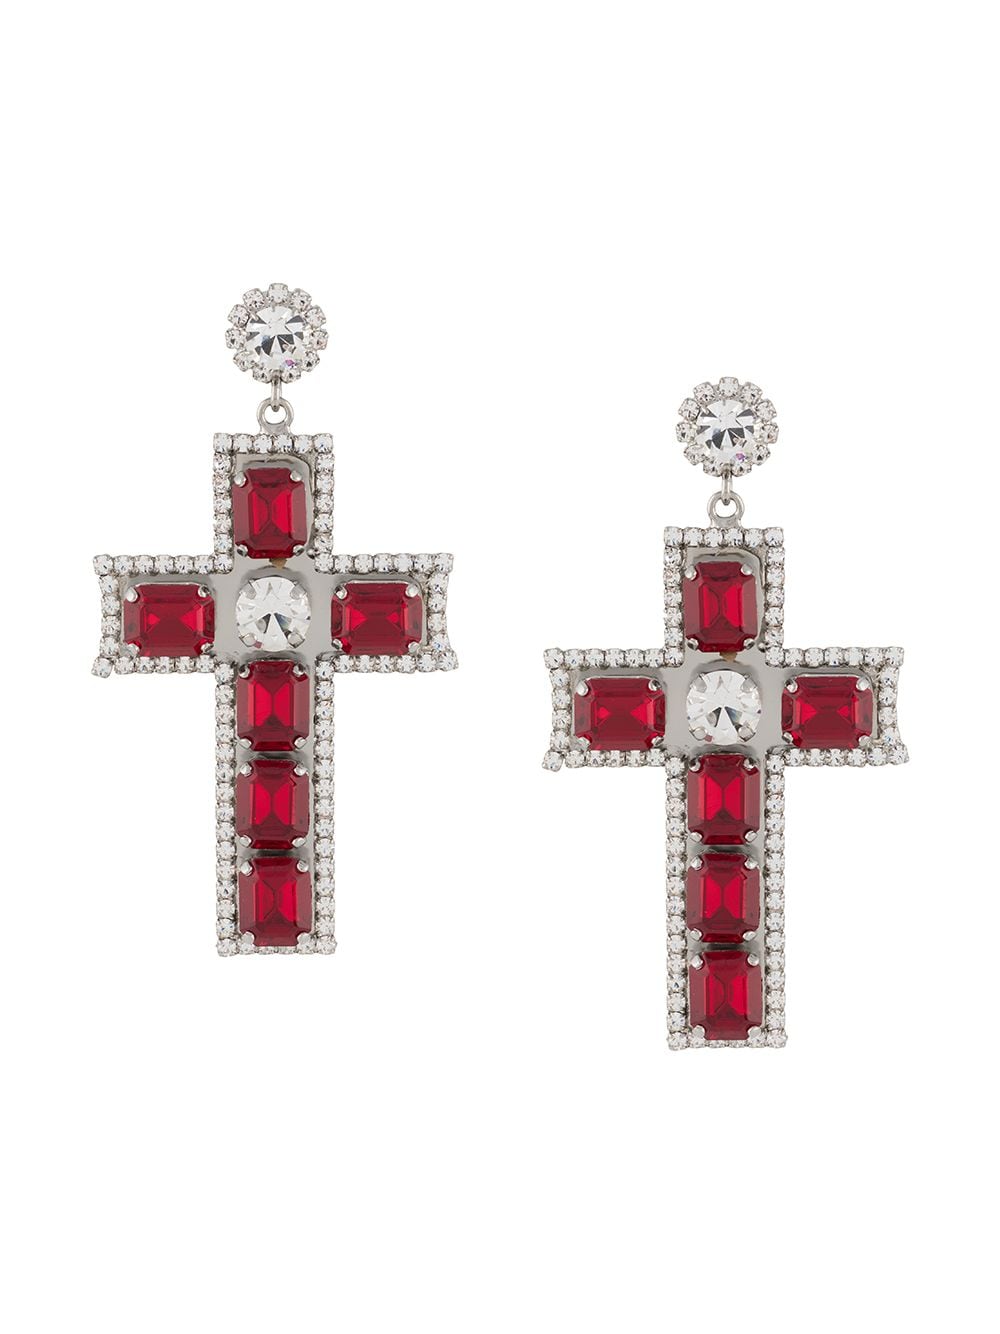 Baroque cross earrings